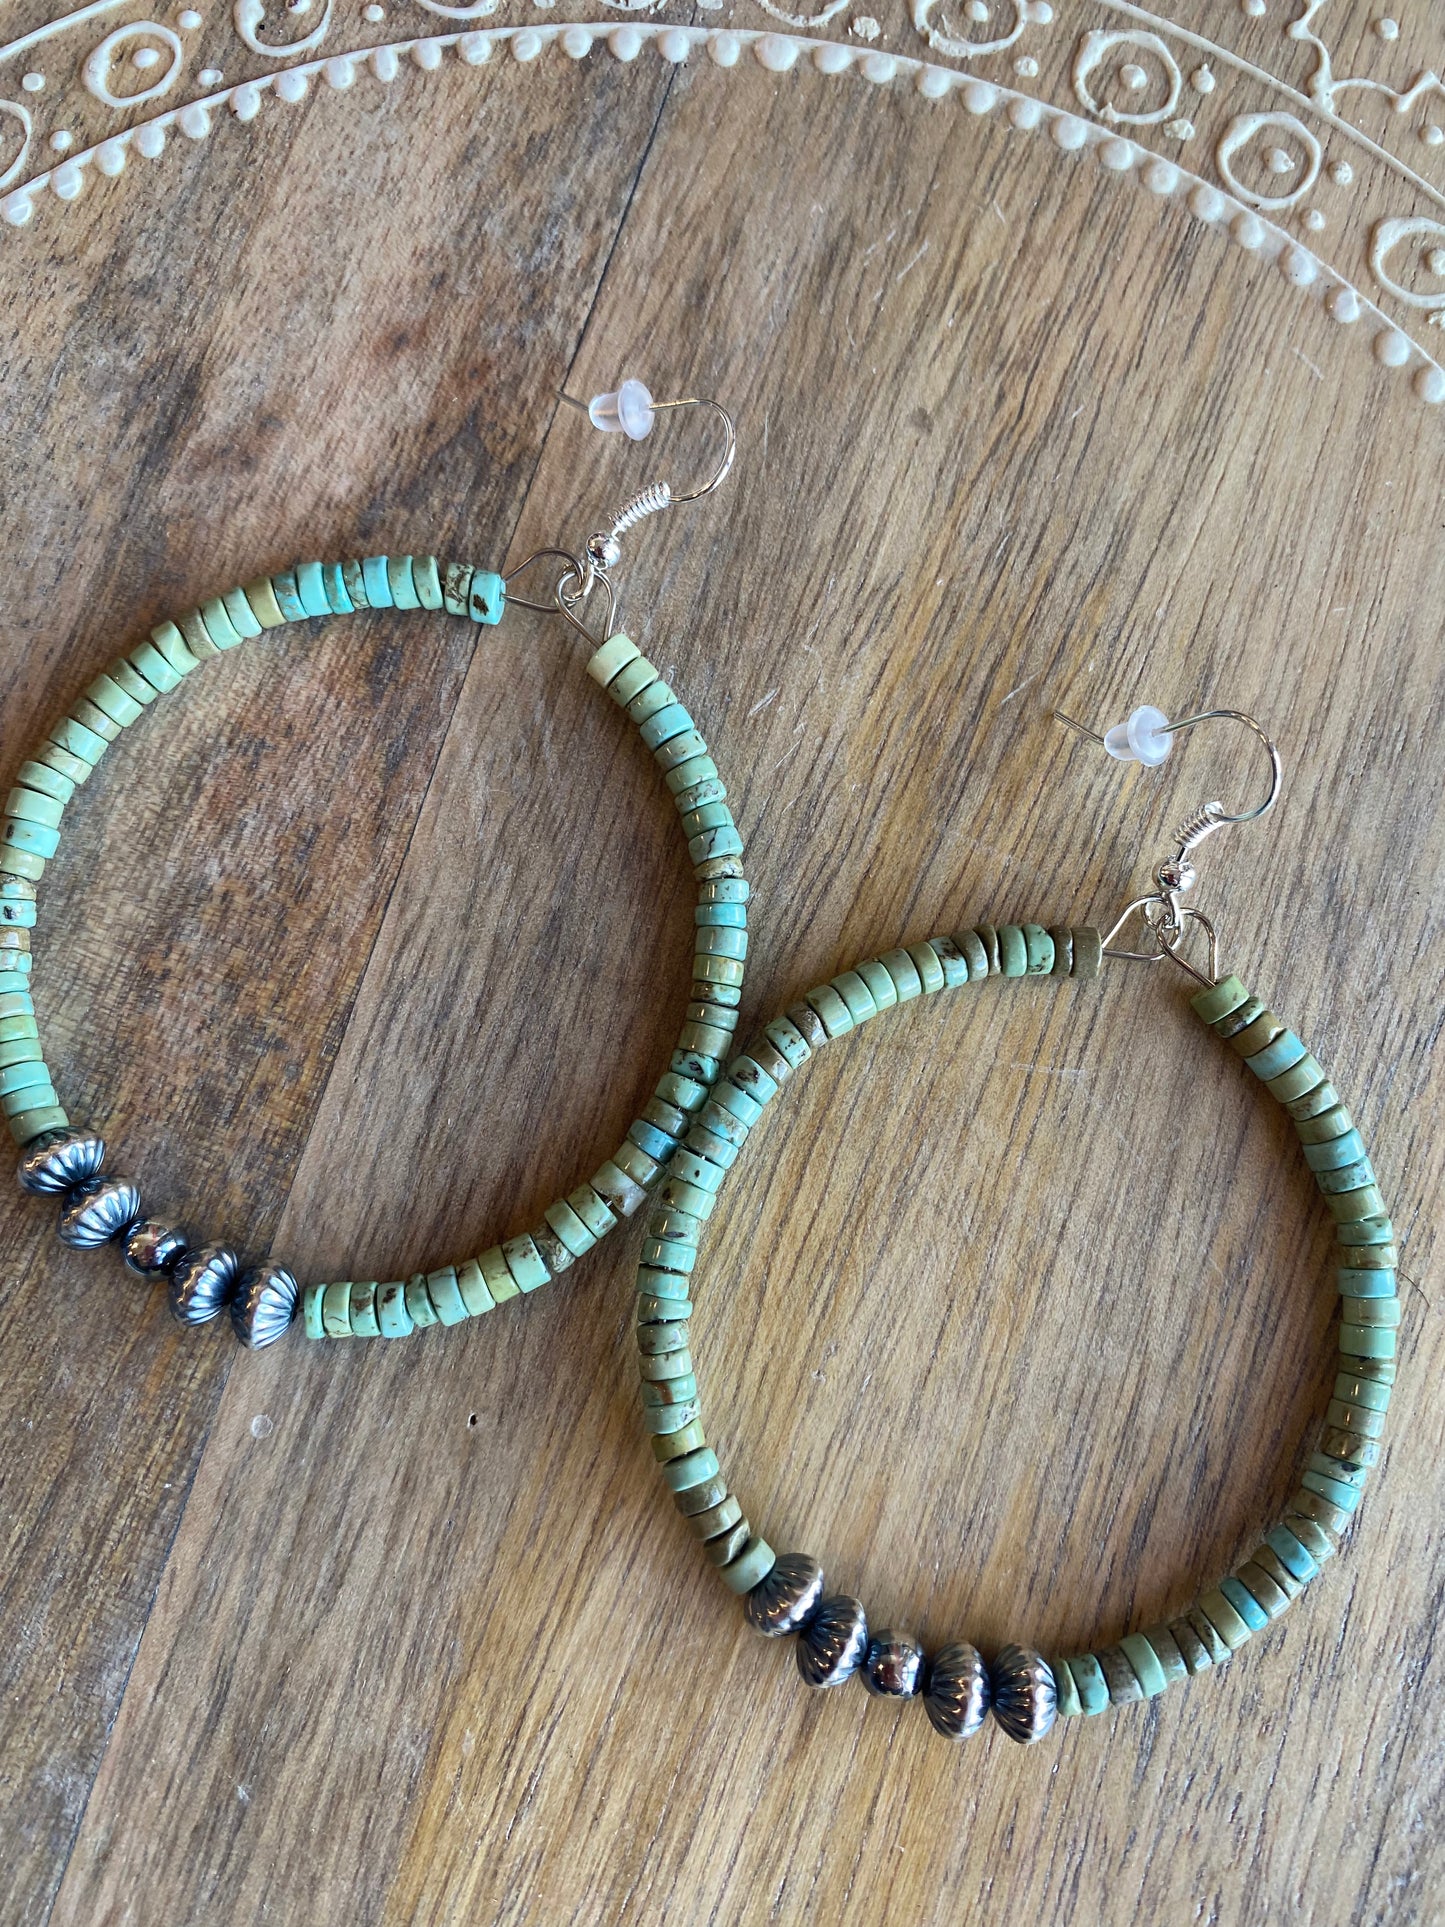 Turquoise and Navajo hoop earrings